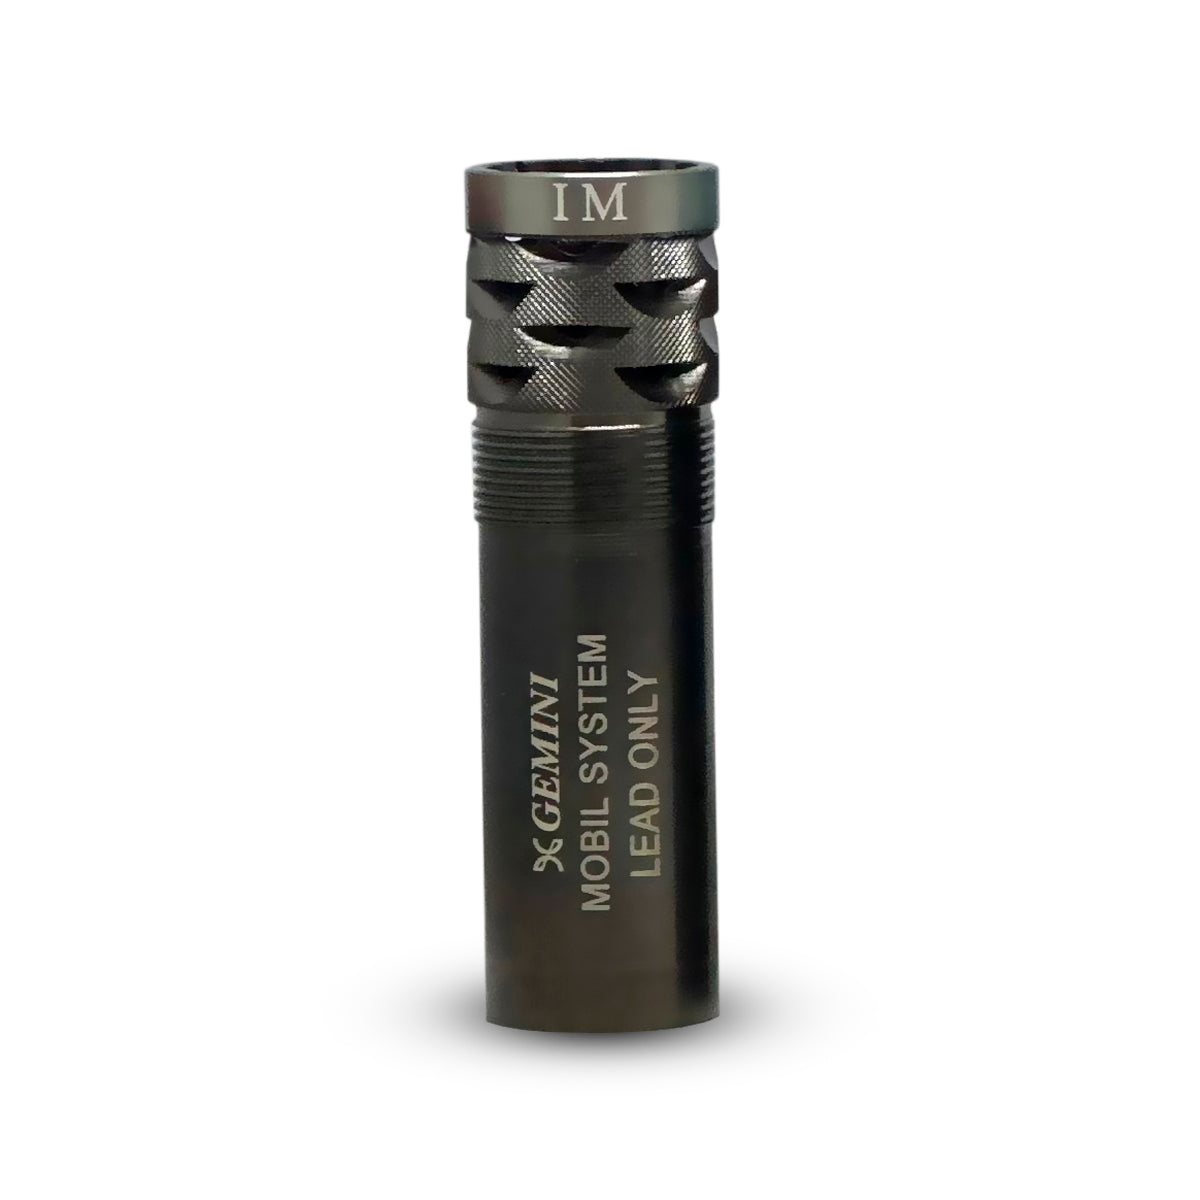 Choke Gemini Freno en boca +20mm Mobilchoque (51mm) calibre 12 con banda de color para escopetas de caza y tiro deportivo